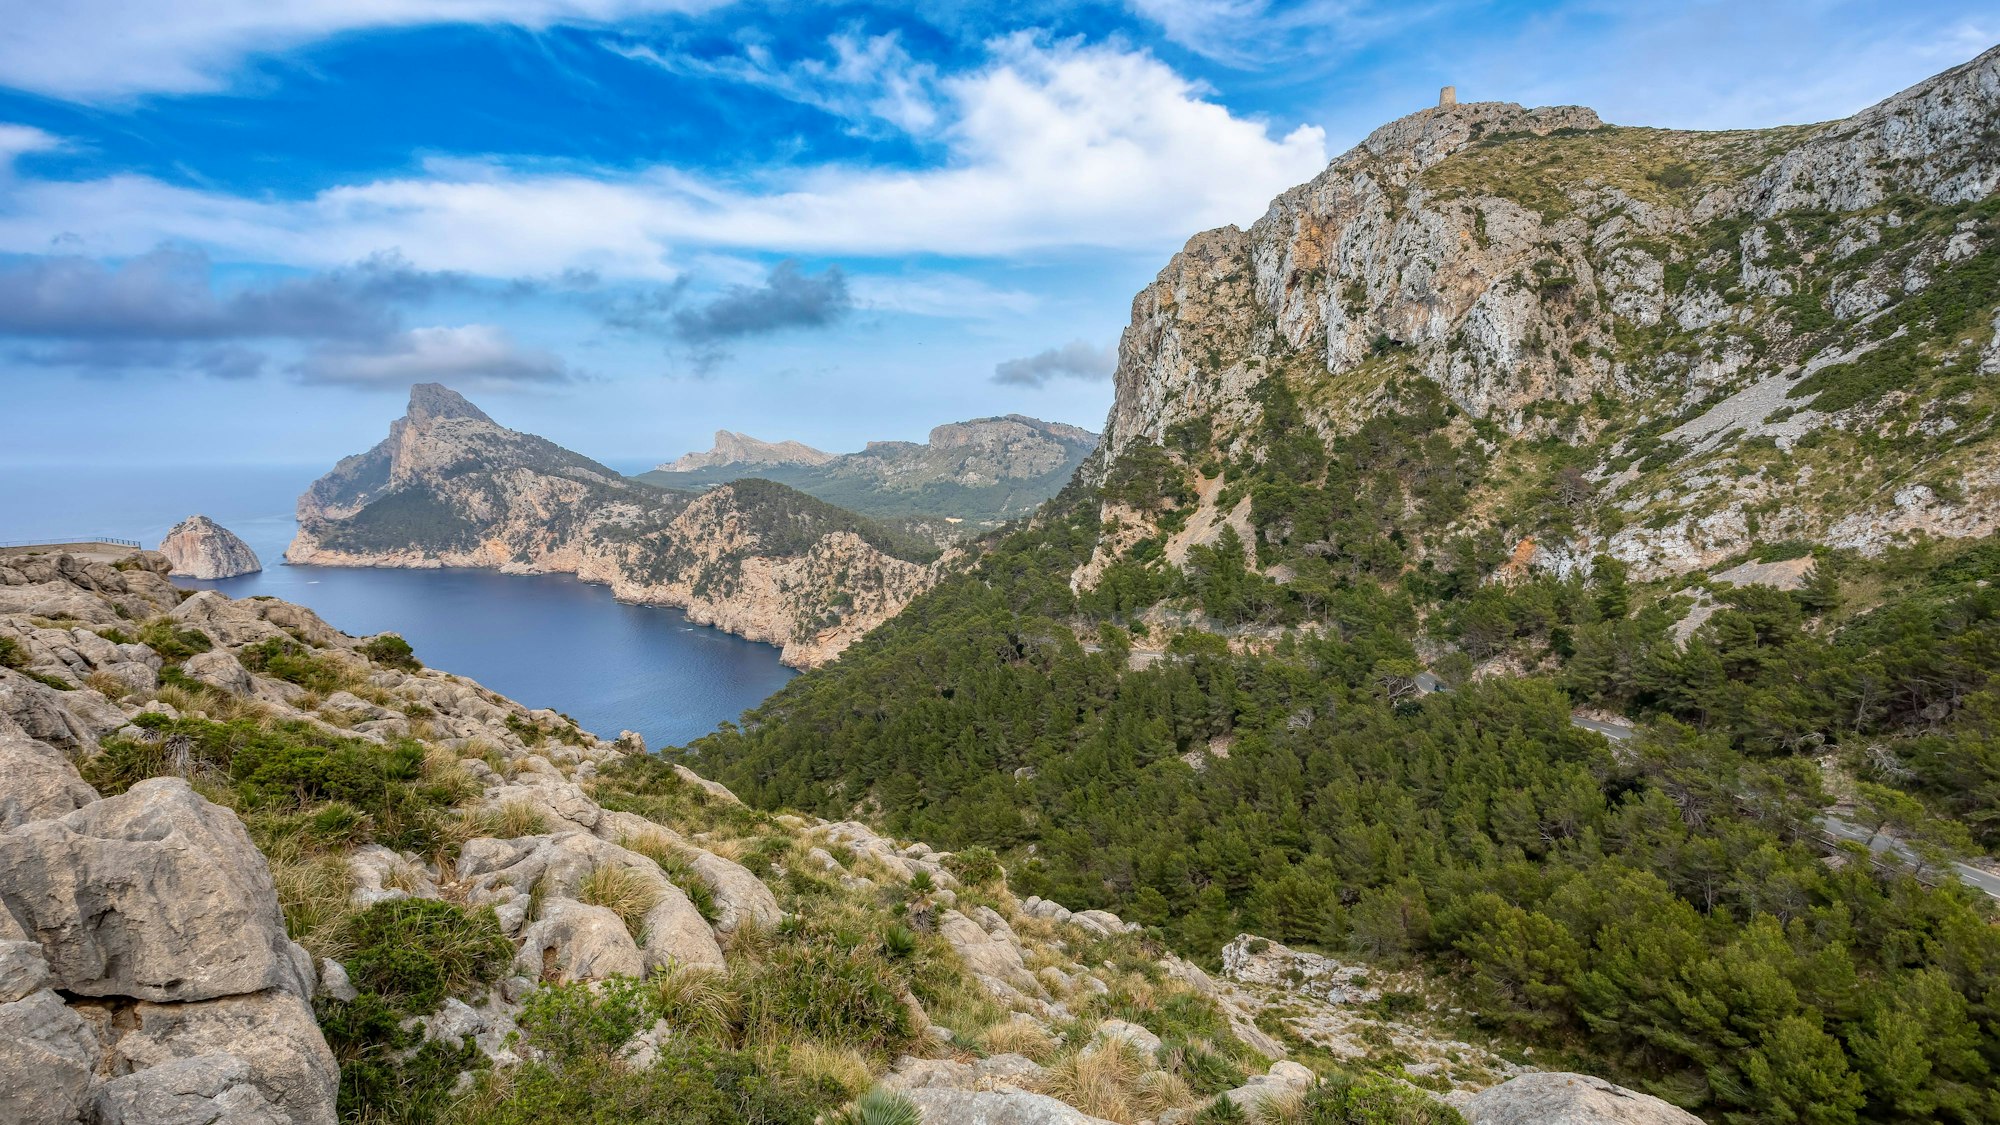 Die Baleareninsel Mallorca lockt Jahr für Jahr nicht nur Strandtouristen, sondern auch Wanderer an. (Symbolbild)